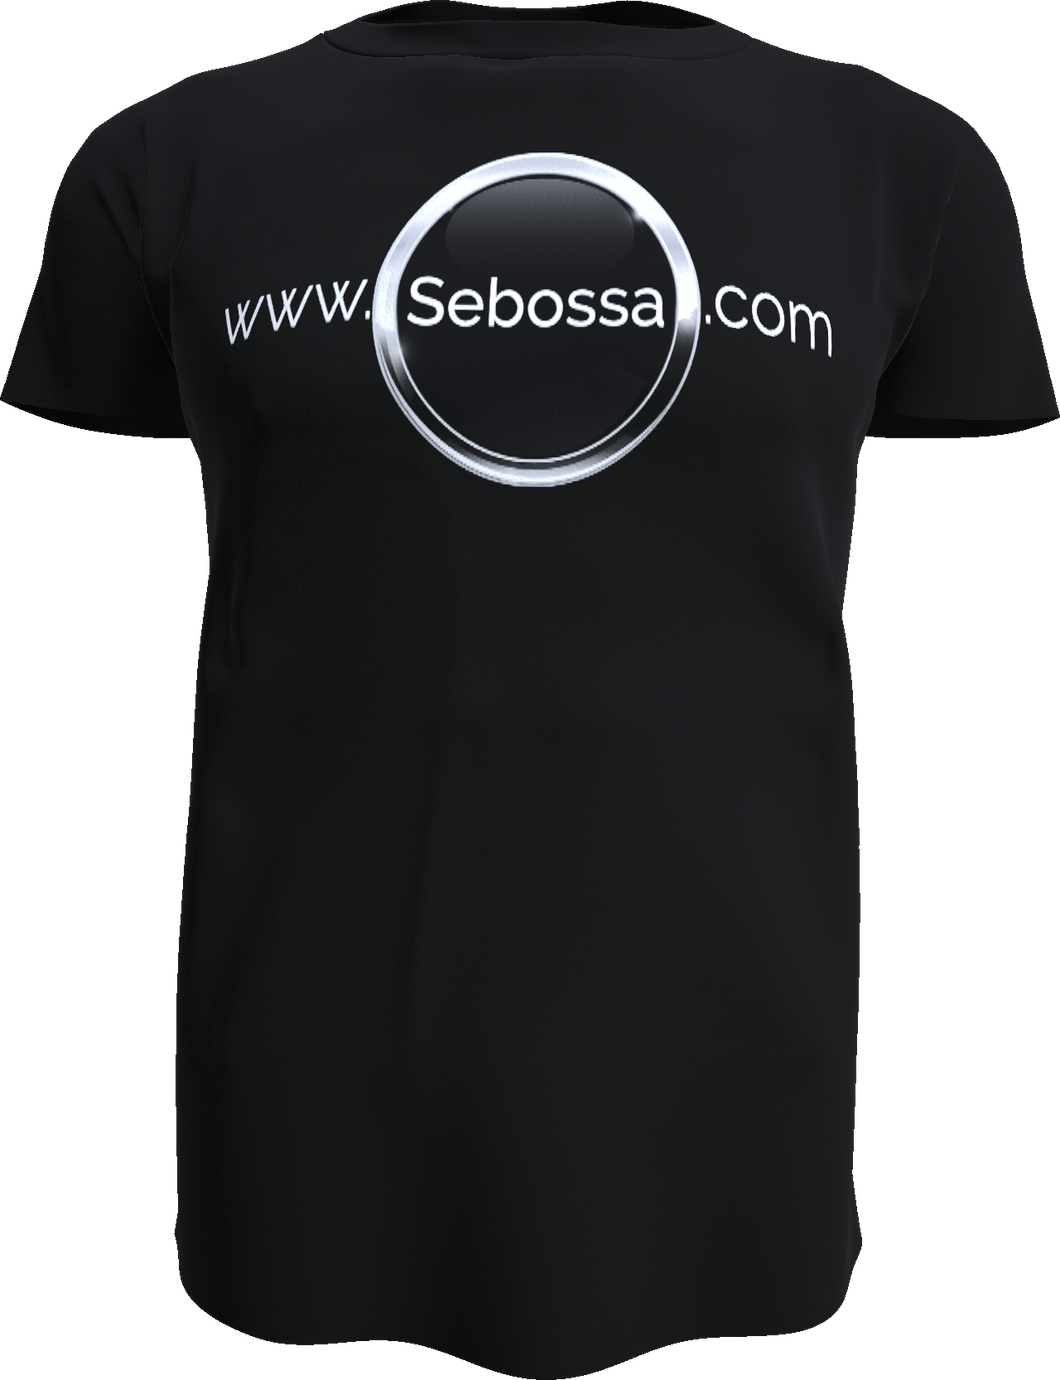 Das Sebossa Shirt